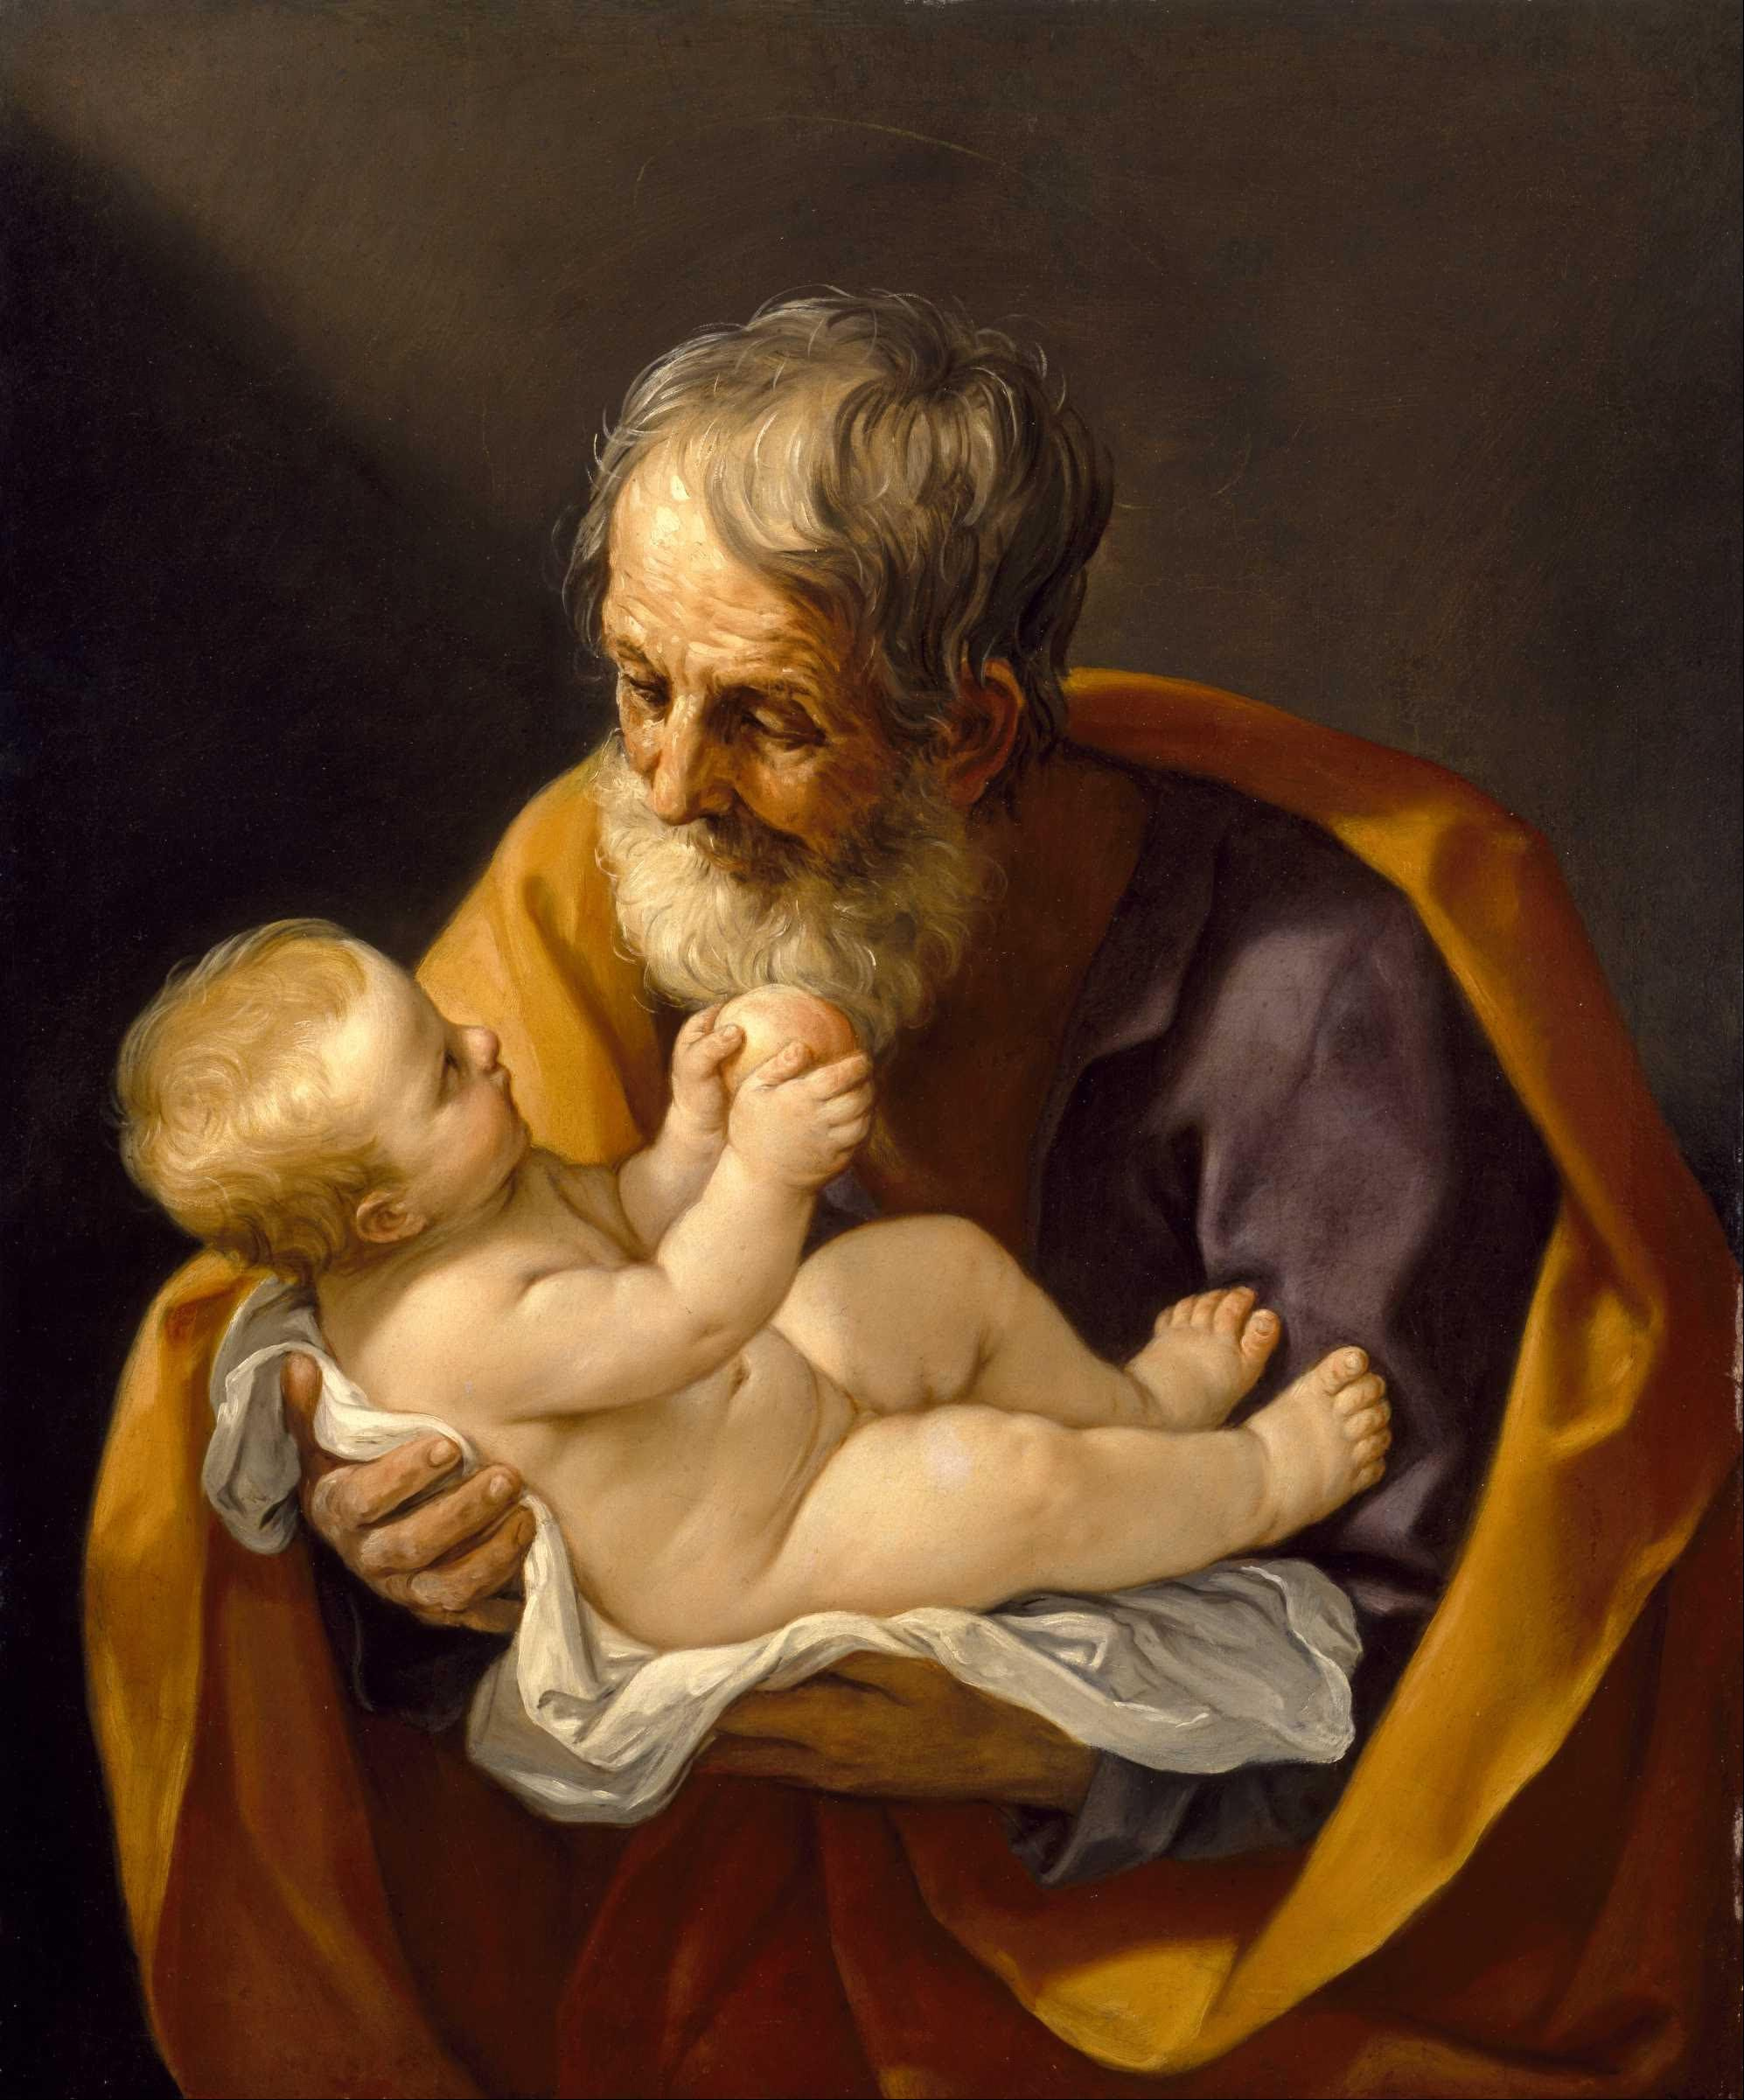 聖ジョセフと幼子キリスト by Guido Reni - 1640 - 72.4 x 88.9 cm 